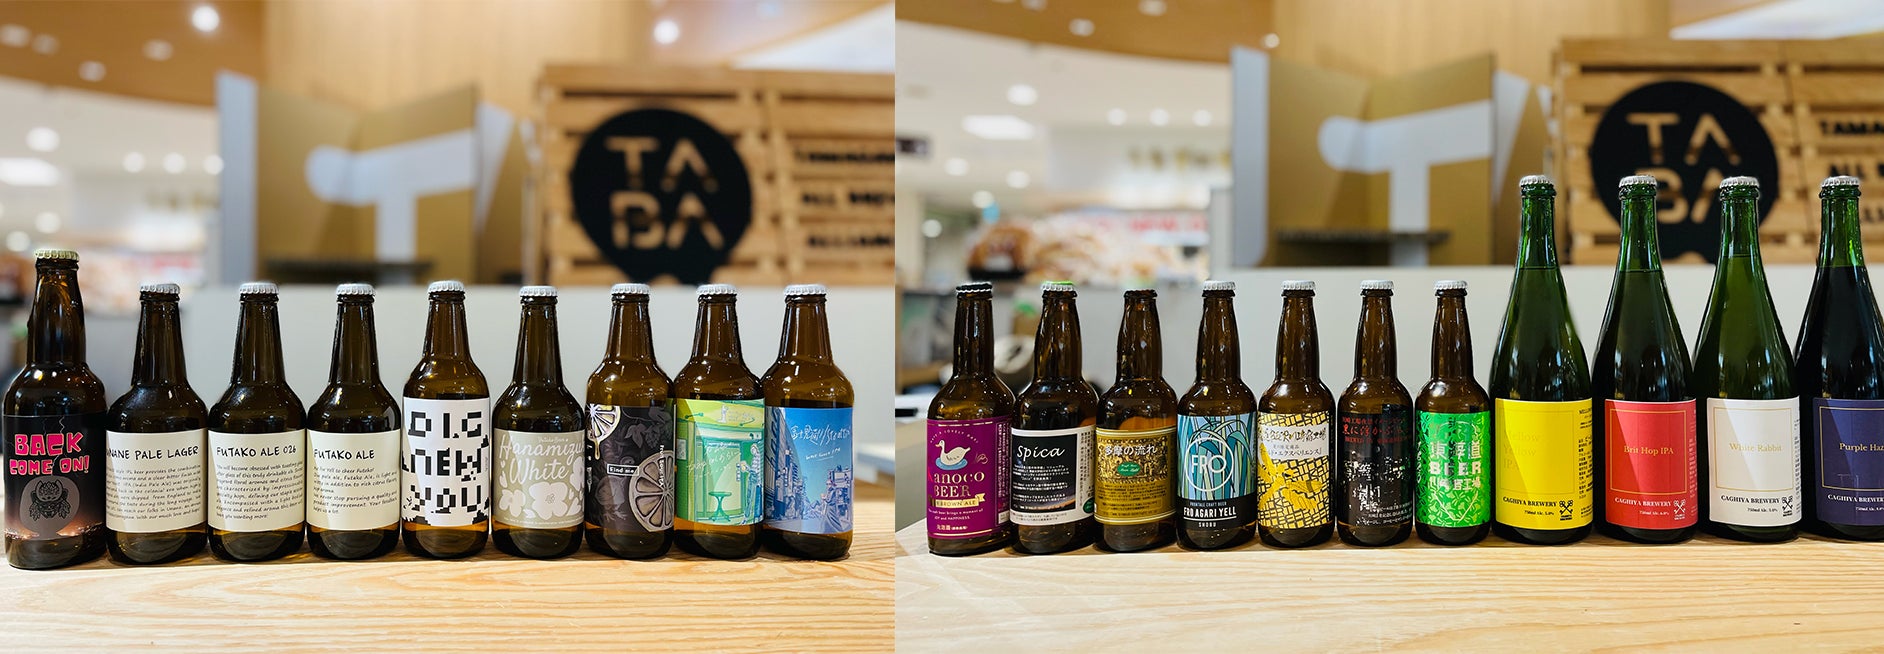 多摩川流域のクラフトビールブルワリーを軸に展開する地域活性化プロジェクト「TABA」が発足1周年を記念して、『TABAからクラフトビールの束をプレゼント』キャンペーンを実施！